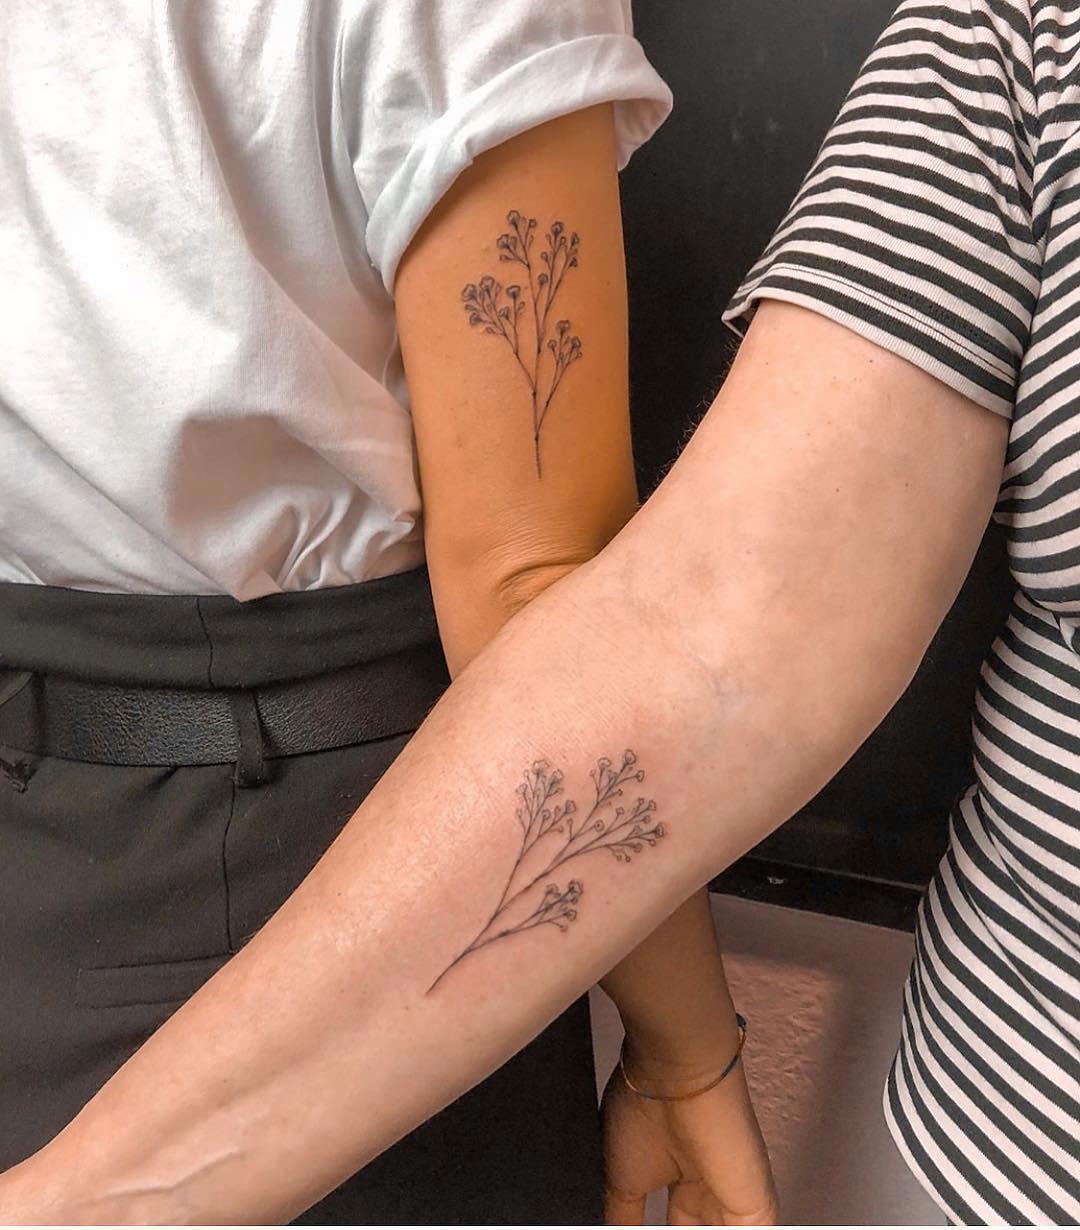 El mismo tattoo floral en el brazo